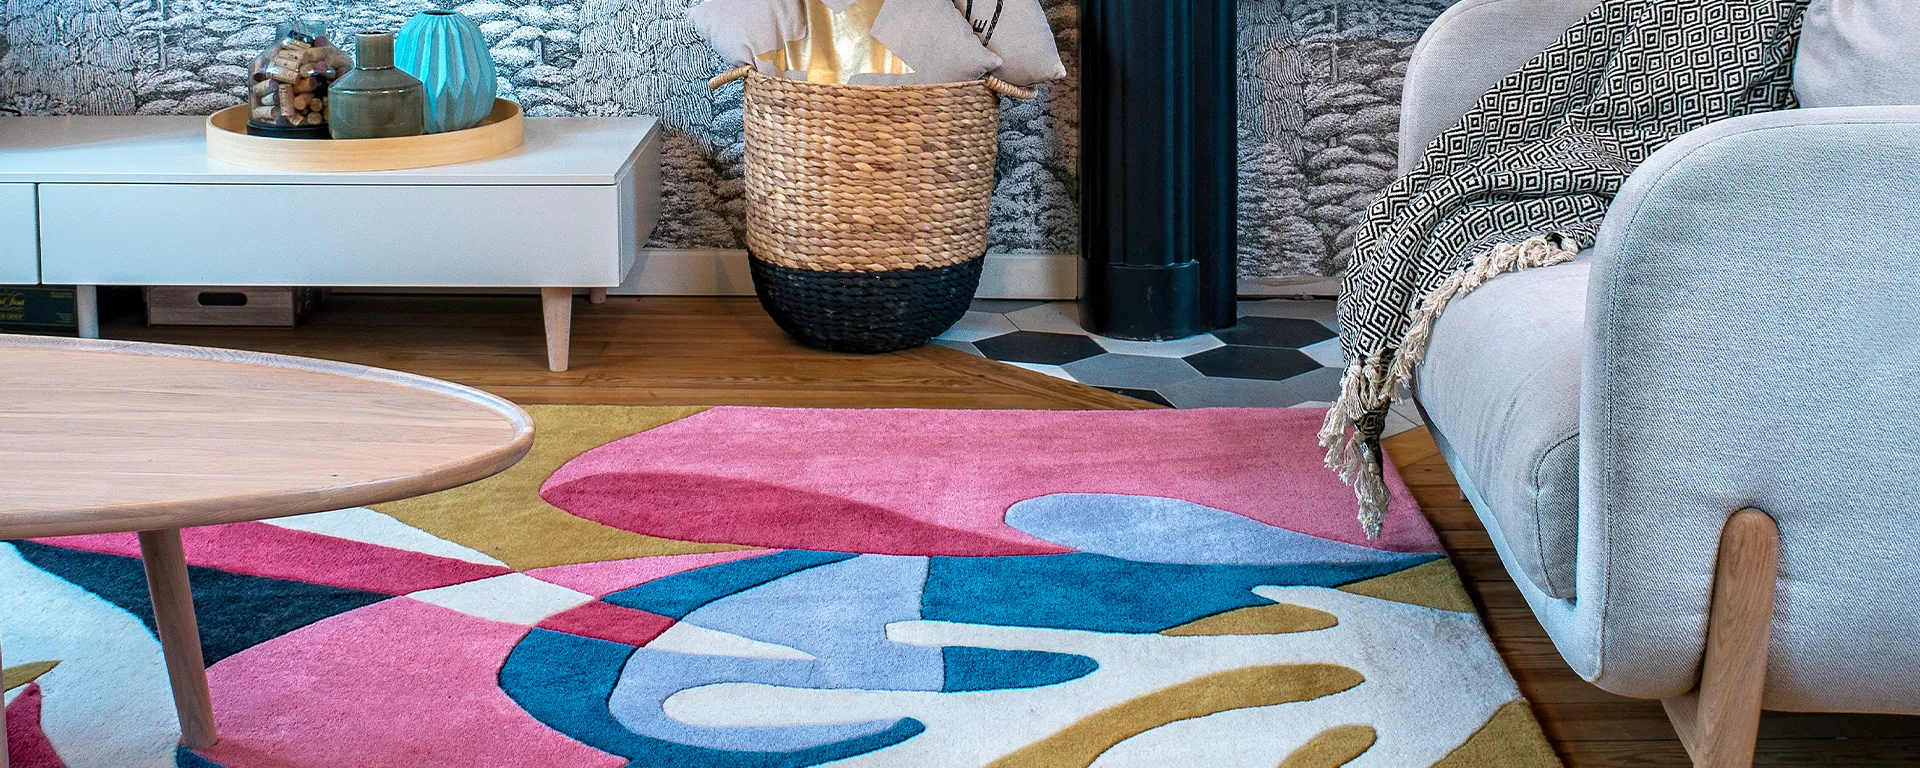 Une décoration colorée :  faire entrer la bonne humeur à la maison